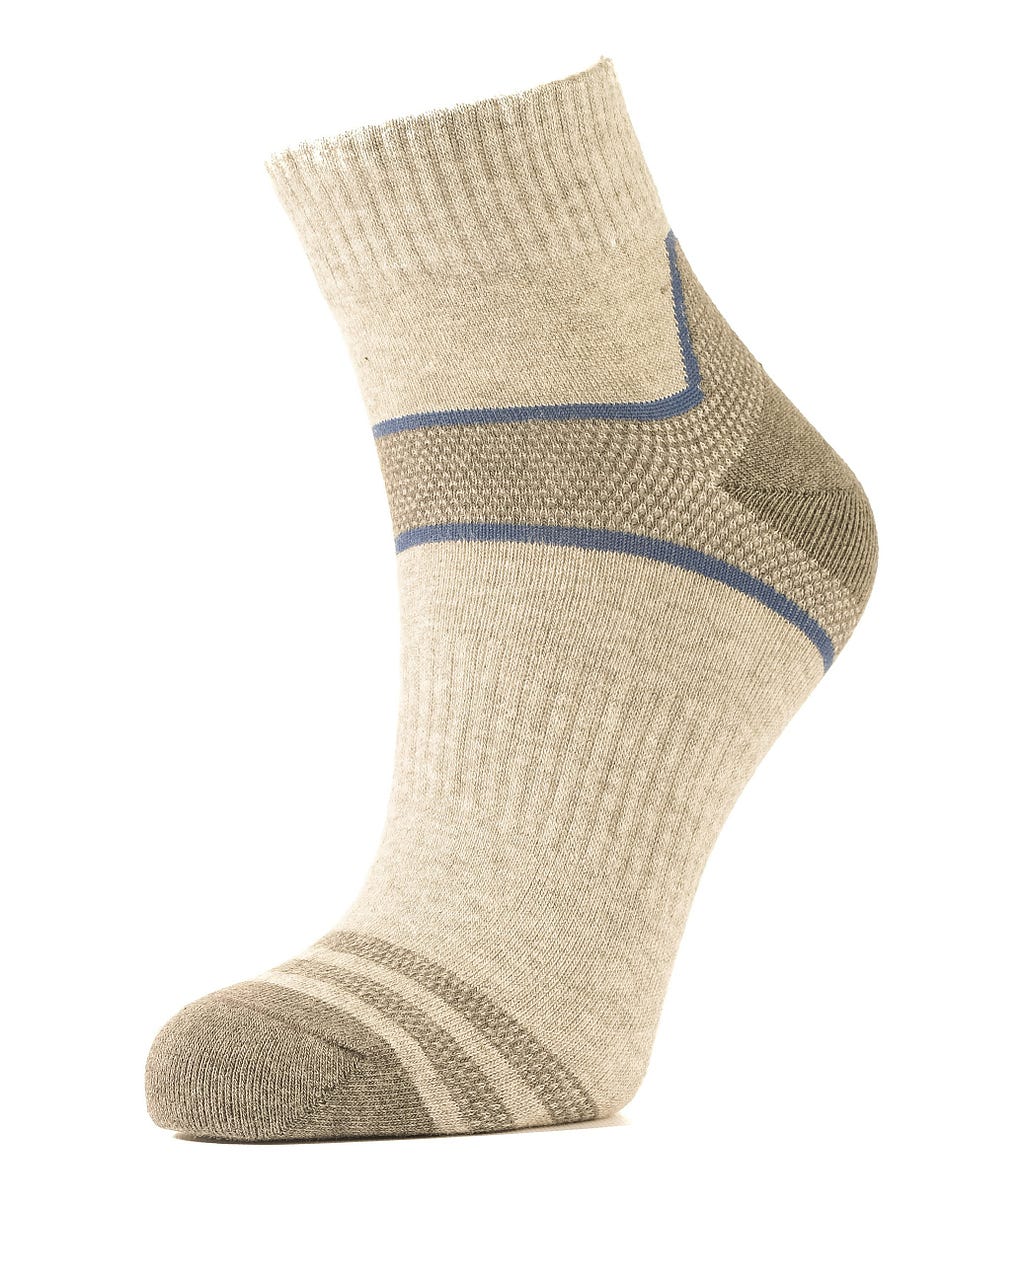 A sock